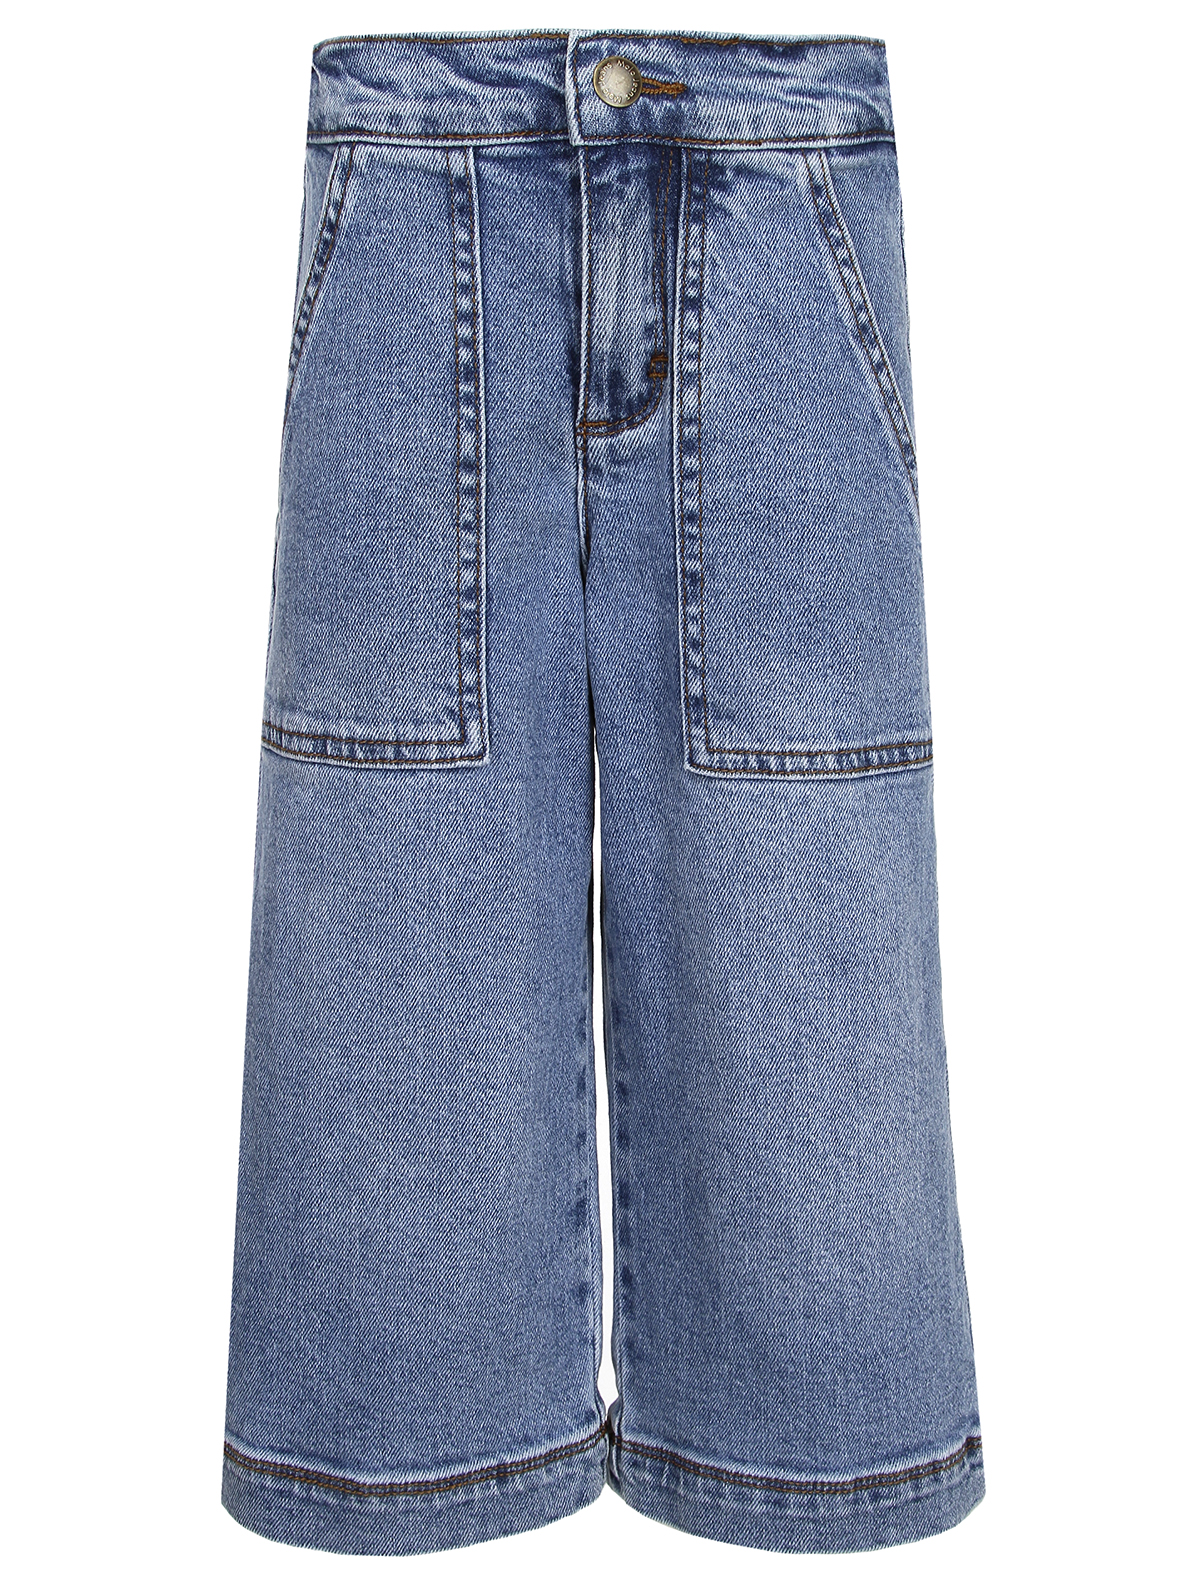 джинсы molo для девочки, синие